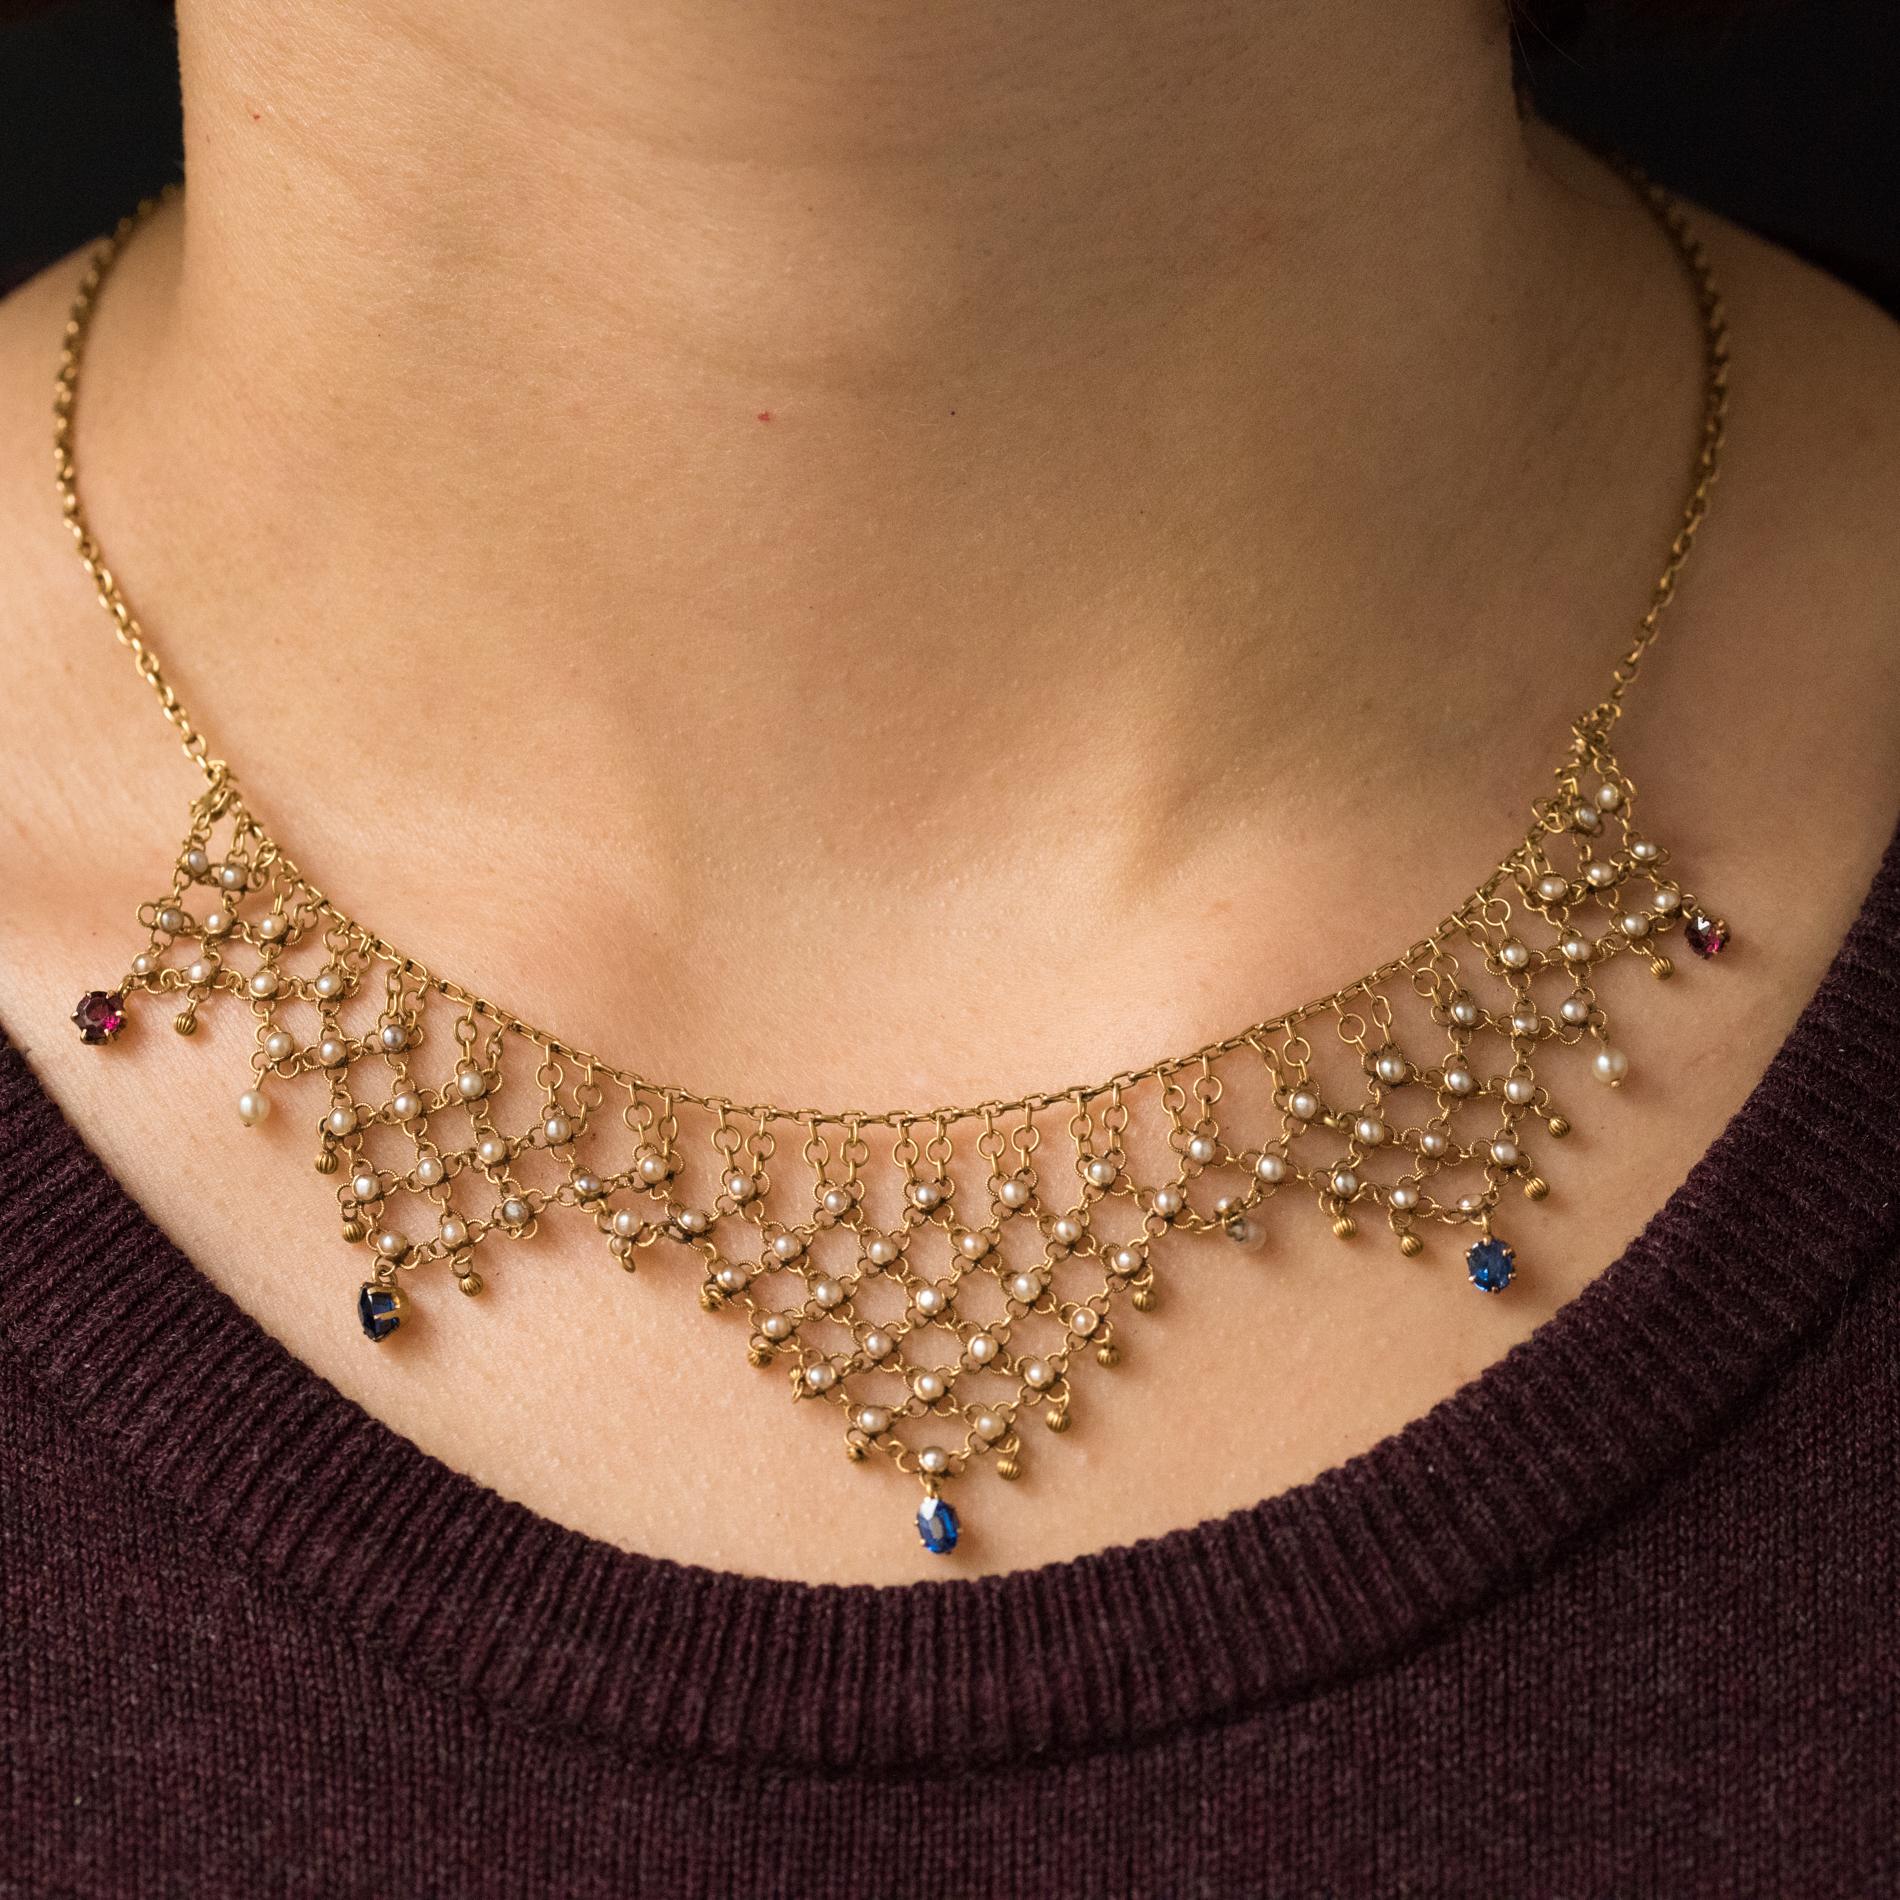 Halskette aus 18 Karat Gelbgold, Adlerkopfpunze.
Diese wunderschöne Halskette besteht aus feinem durchbrochenem Gold. Auf der Vorderseite befindet sich ein feines goldenes Spitzendesign, das mit feinen, eingefassten Perlen durchsetzt ist. An den